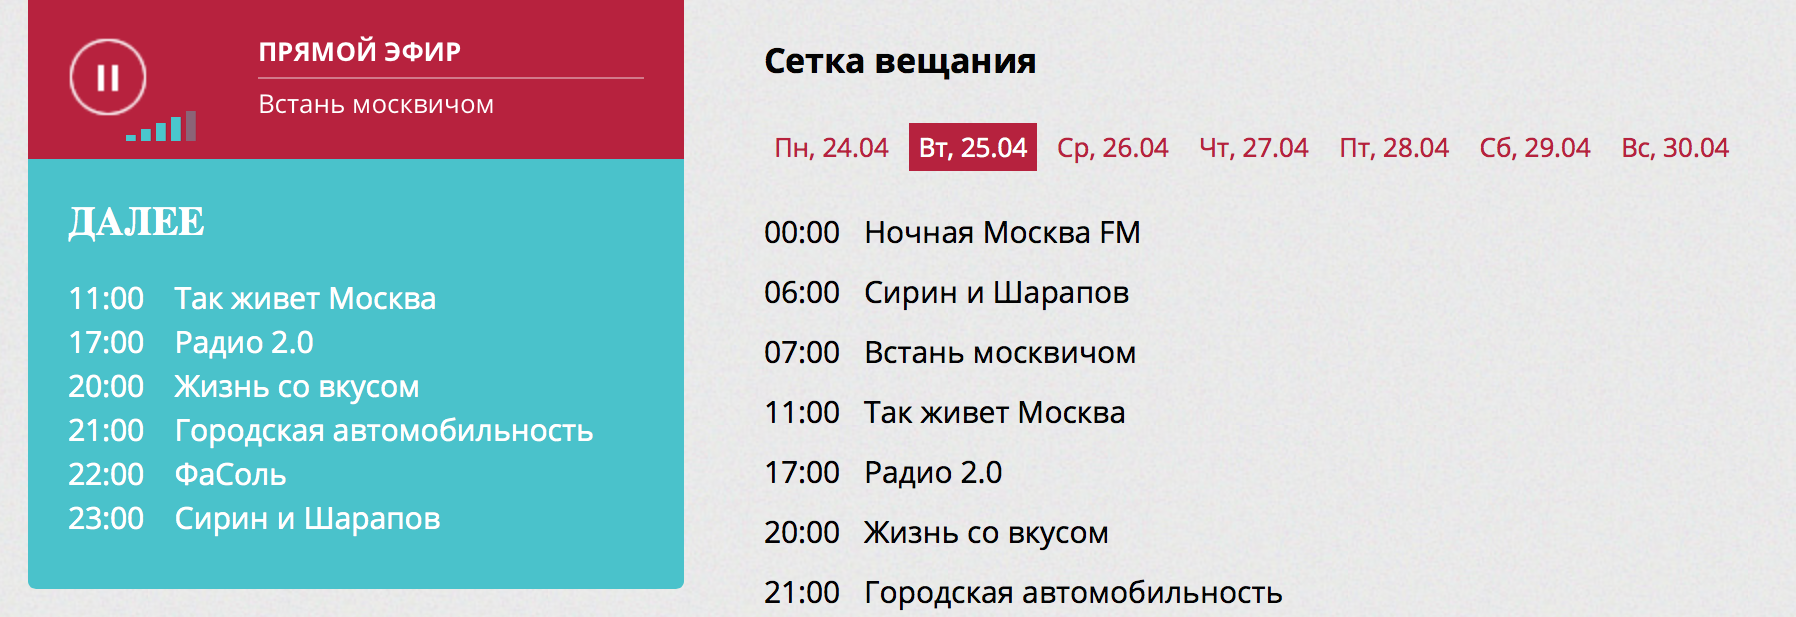 Сетка вещания. Сетка вещания радио. Программная сетка вещания. Сетка вещания радиостанций в Москве.